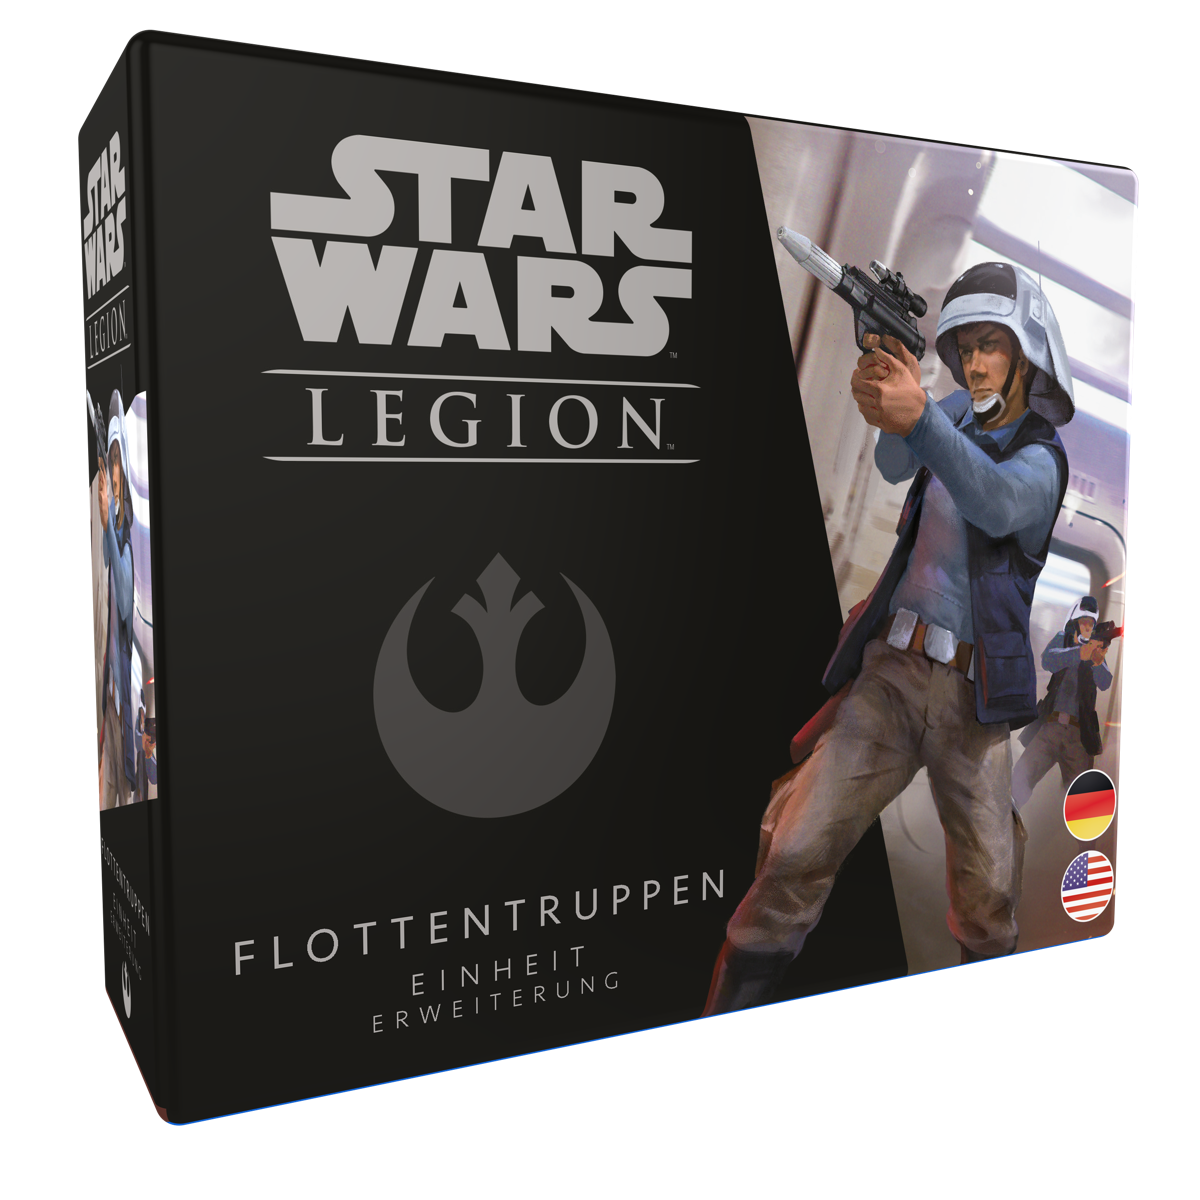 Star Wars: Legion - Flottentruppen DE/EN